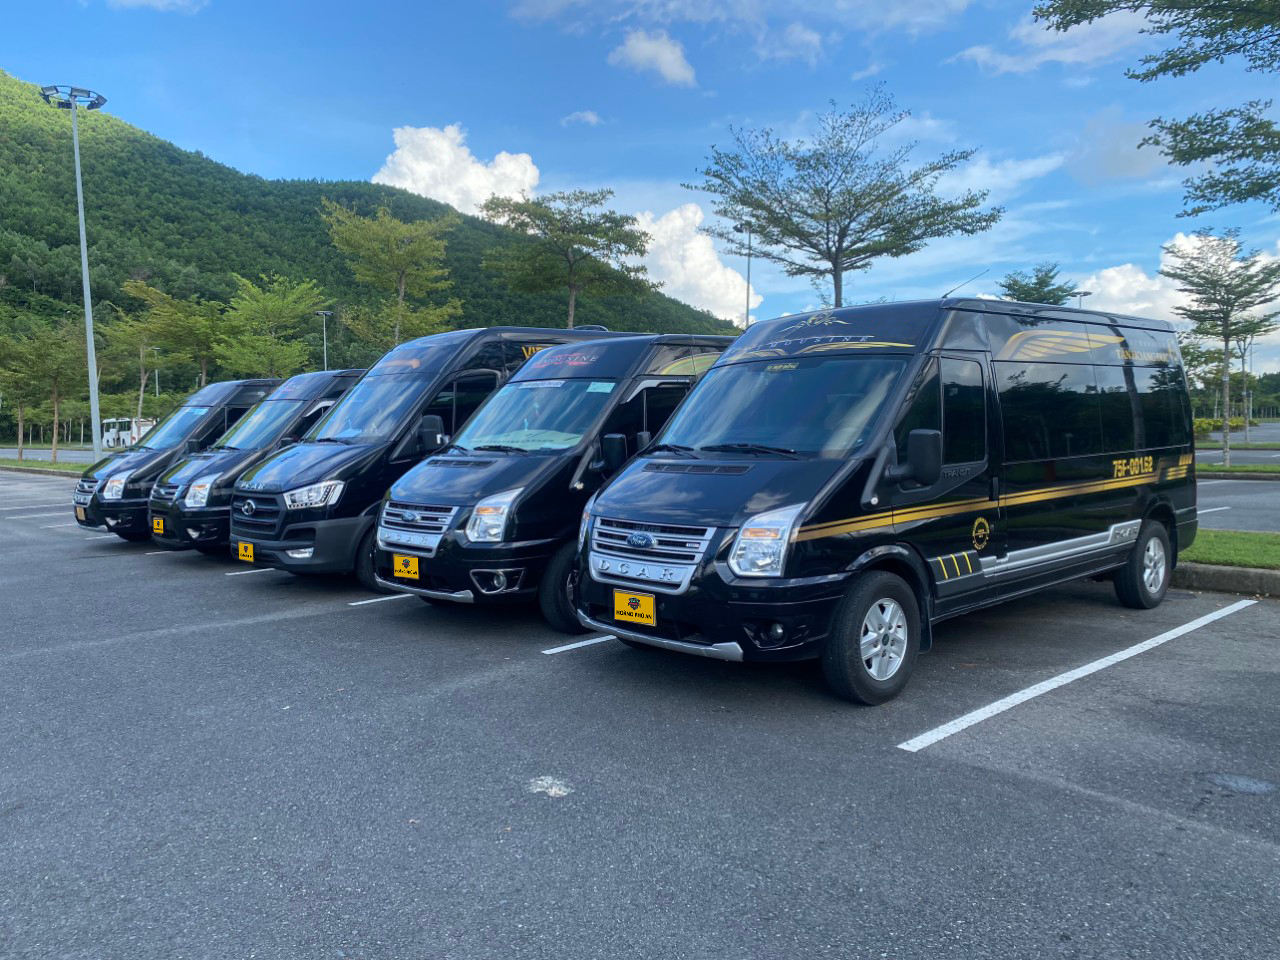 Dịch vụ thuê xe đi Bà Nà Hills của Hoàng Phú An sẽ mang đến cho bạn một hành trình an toàn, tiết kiệm và trọn vẹn.